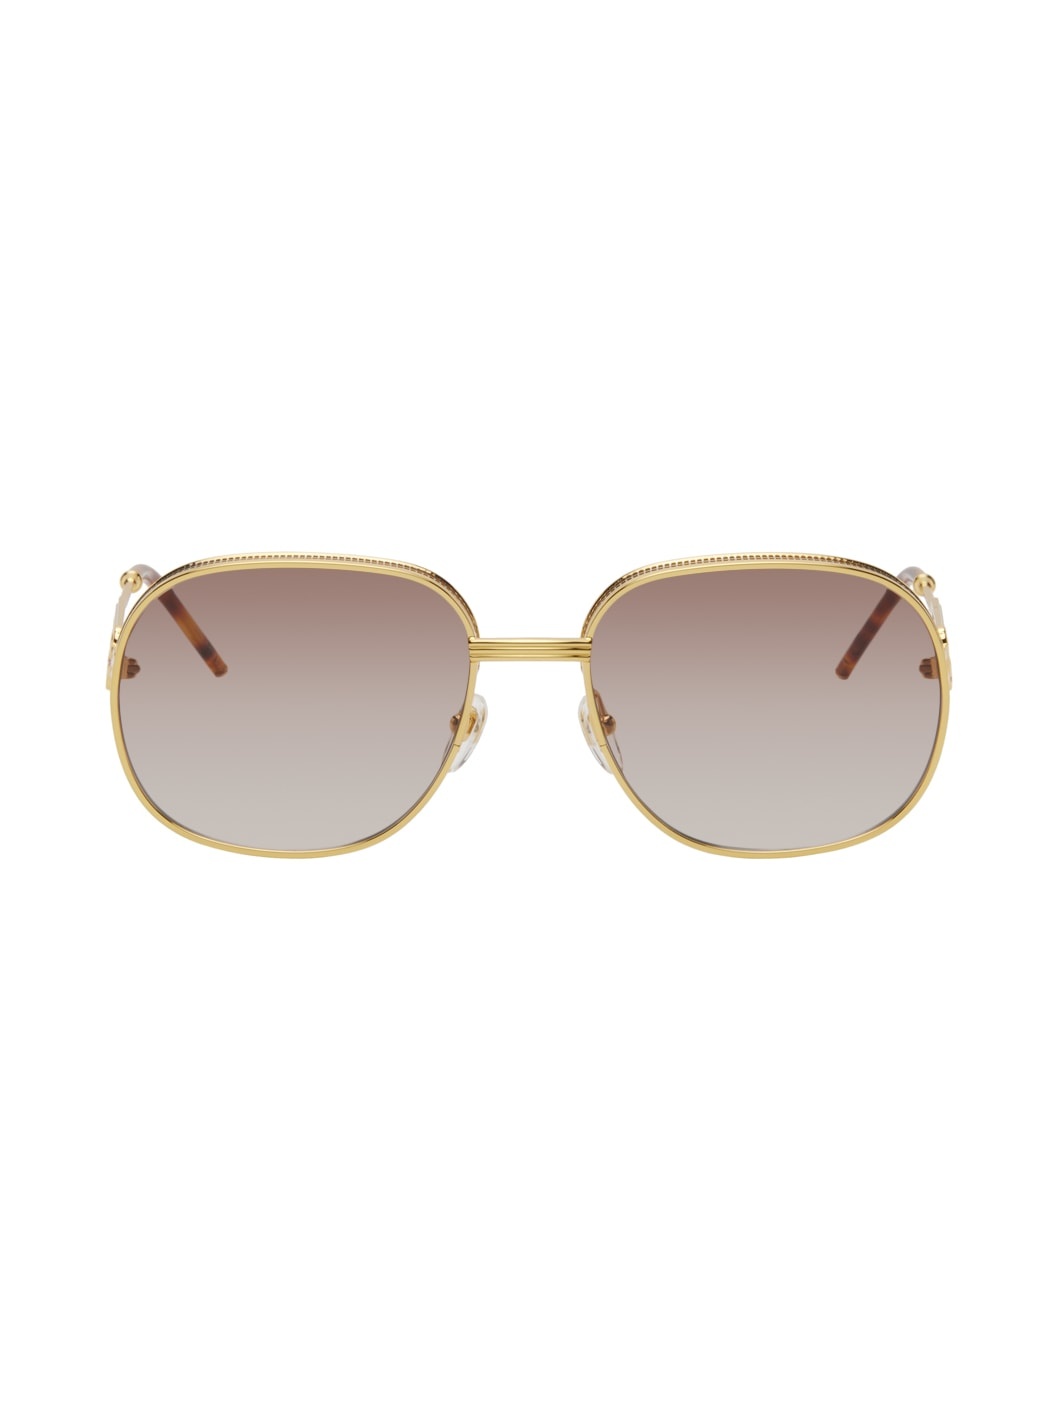 Gold Square Sunglasses - 1